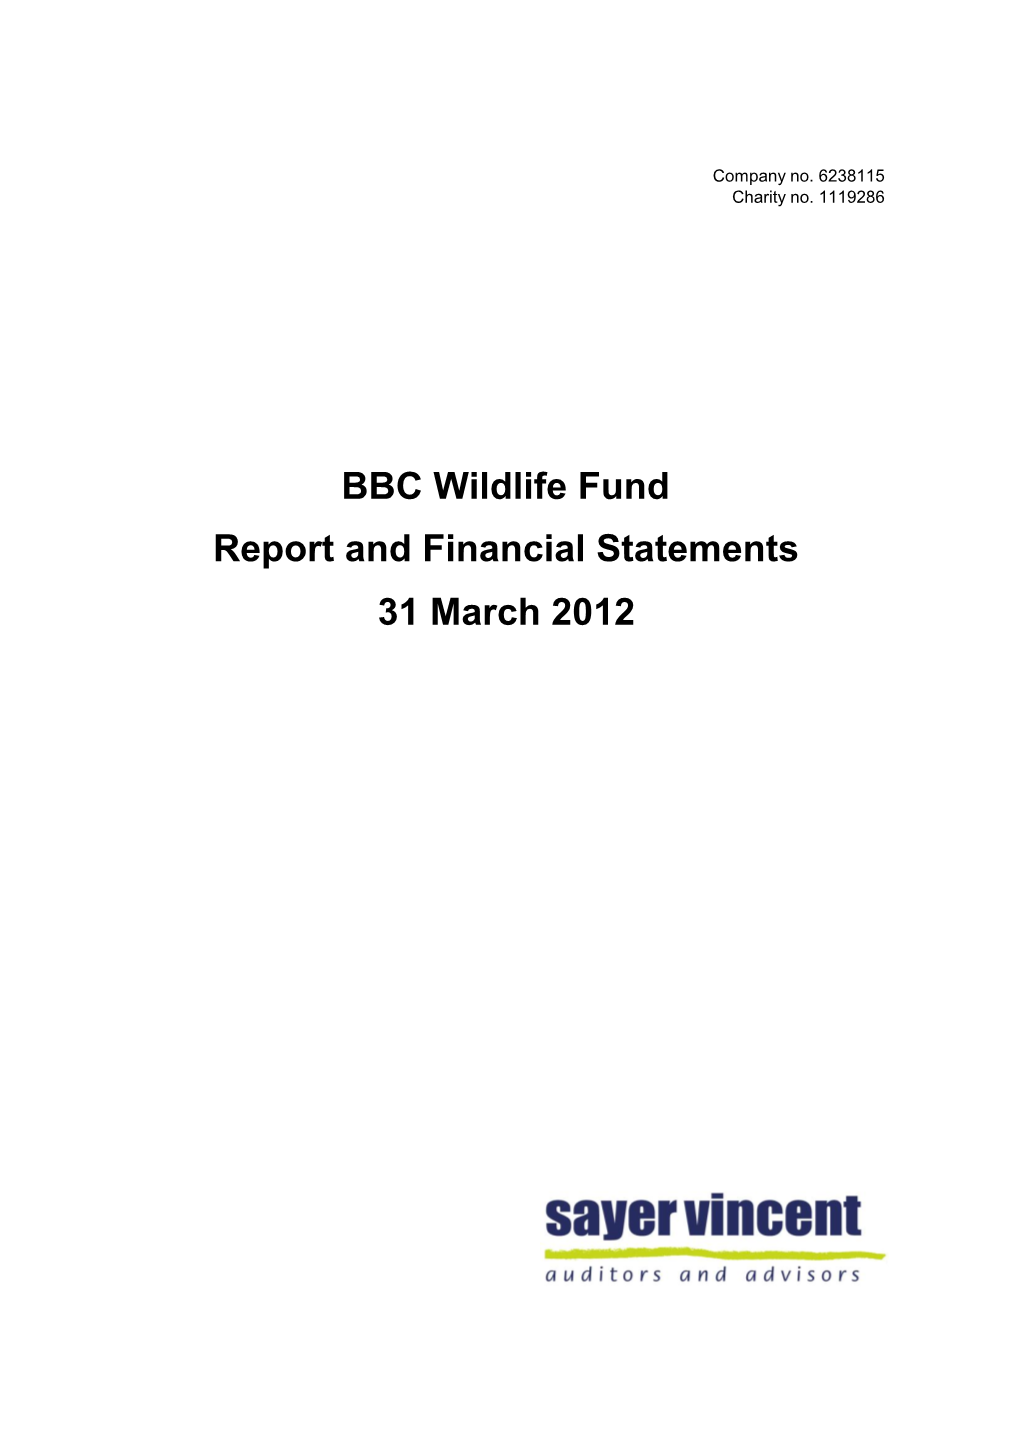 BBC Wildlife Fund Report and Financial Statements 31 March 2012 BBC Wildlife Fund